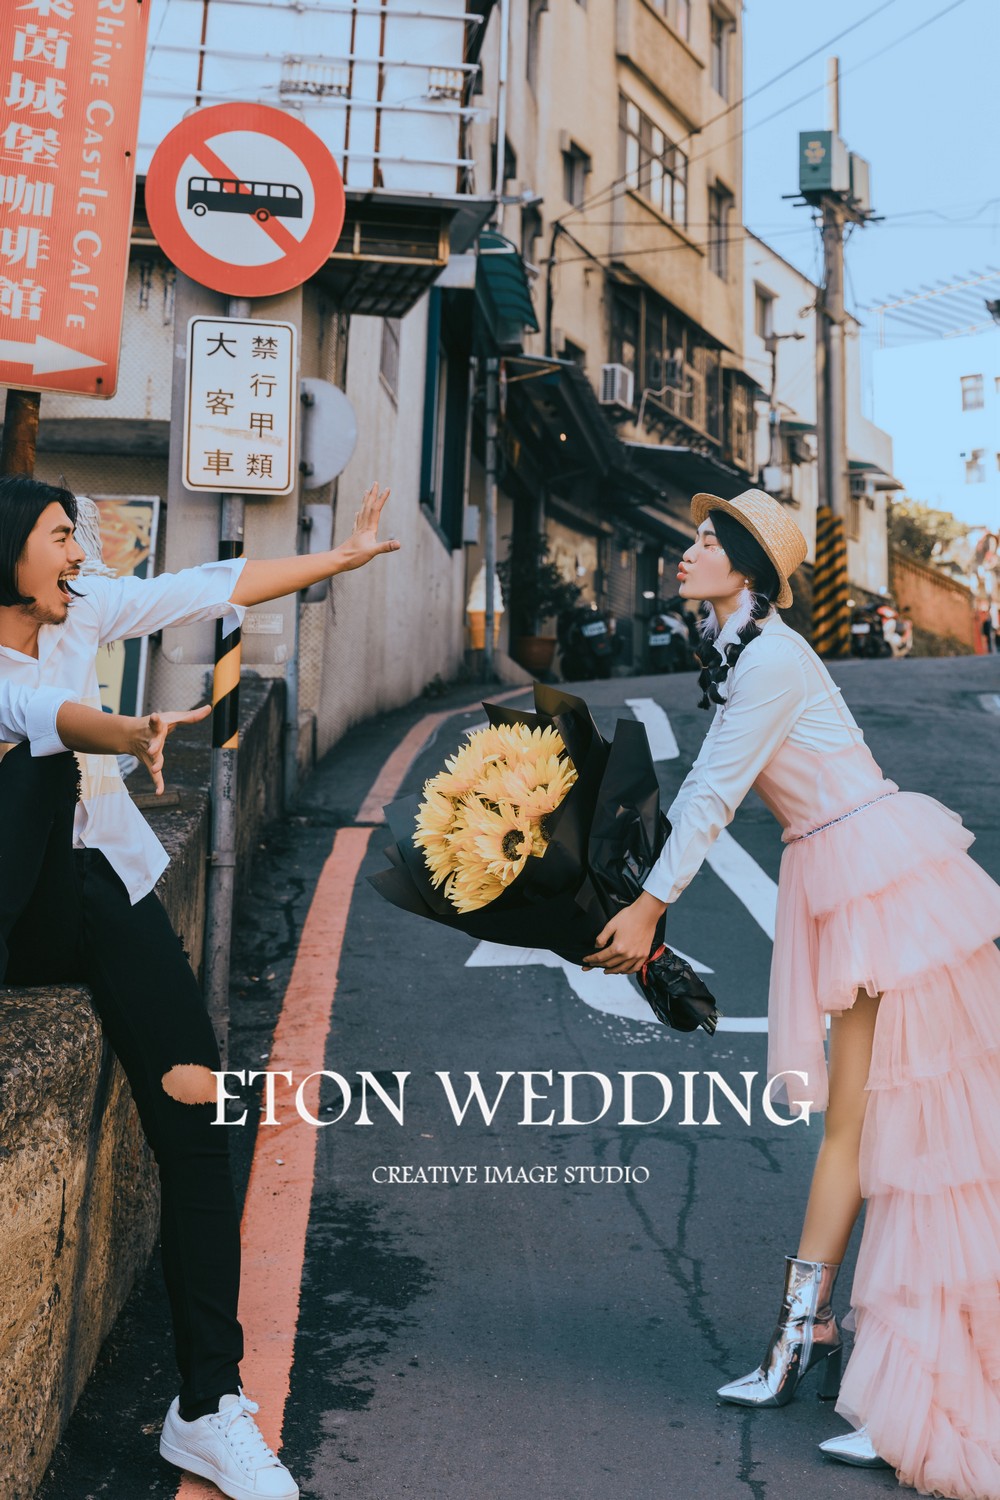 婚紗攝影,淡水婚紗照,台北拍婚紗,台北 婚紗照,婚紗攝影推薦,婚紗照風格,婚禮攝影,婚攝,婚禮記錄,婚禮錄影